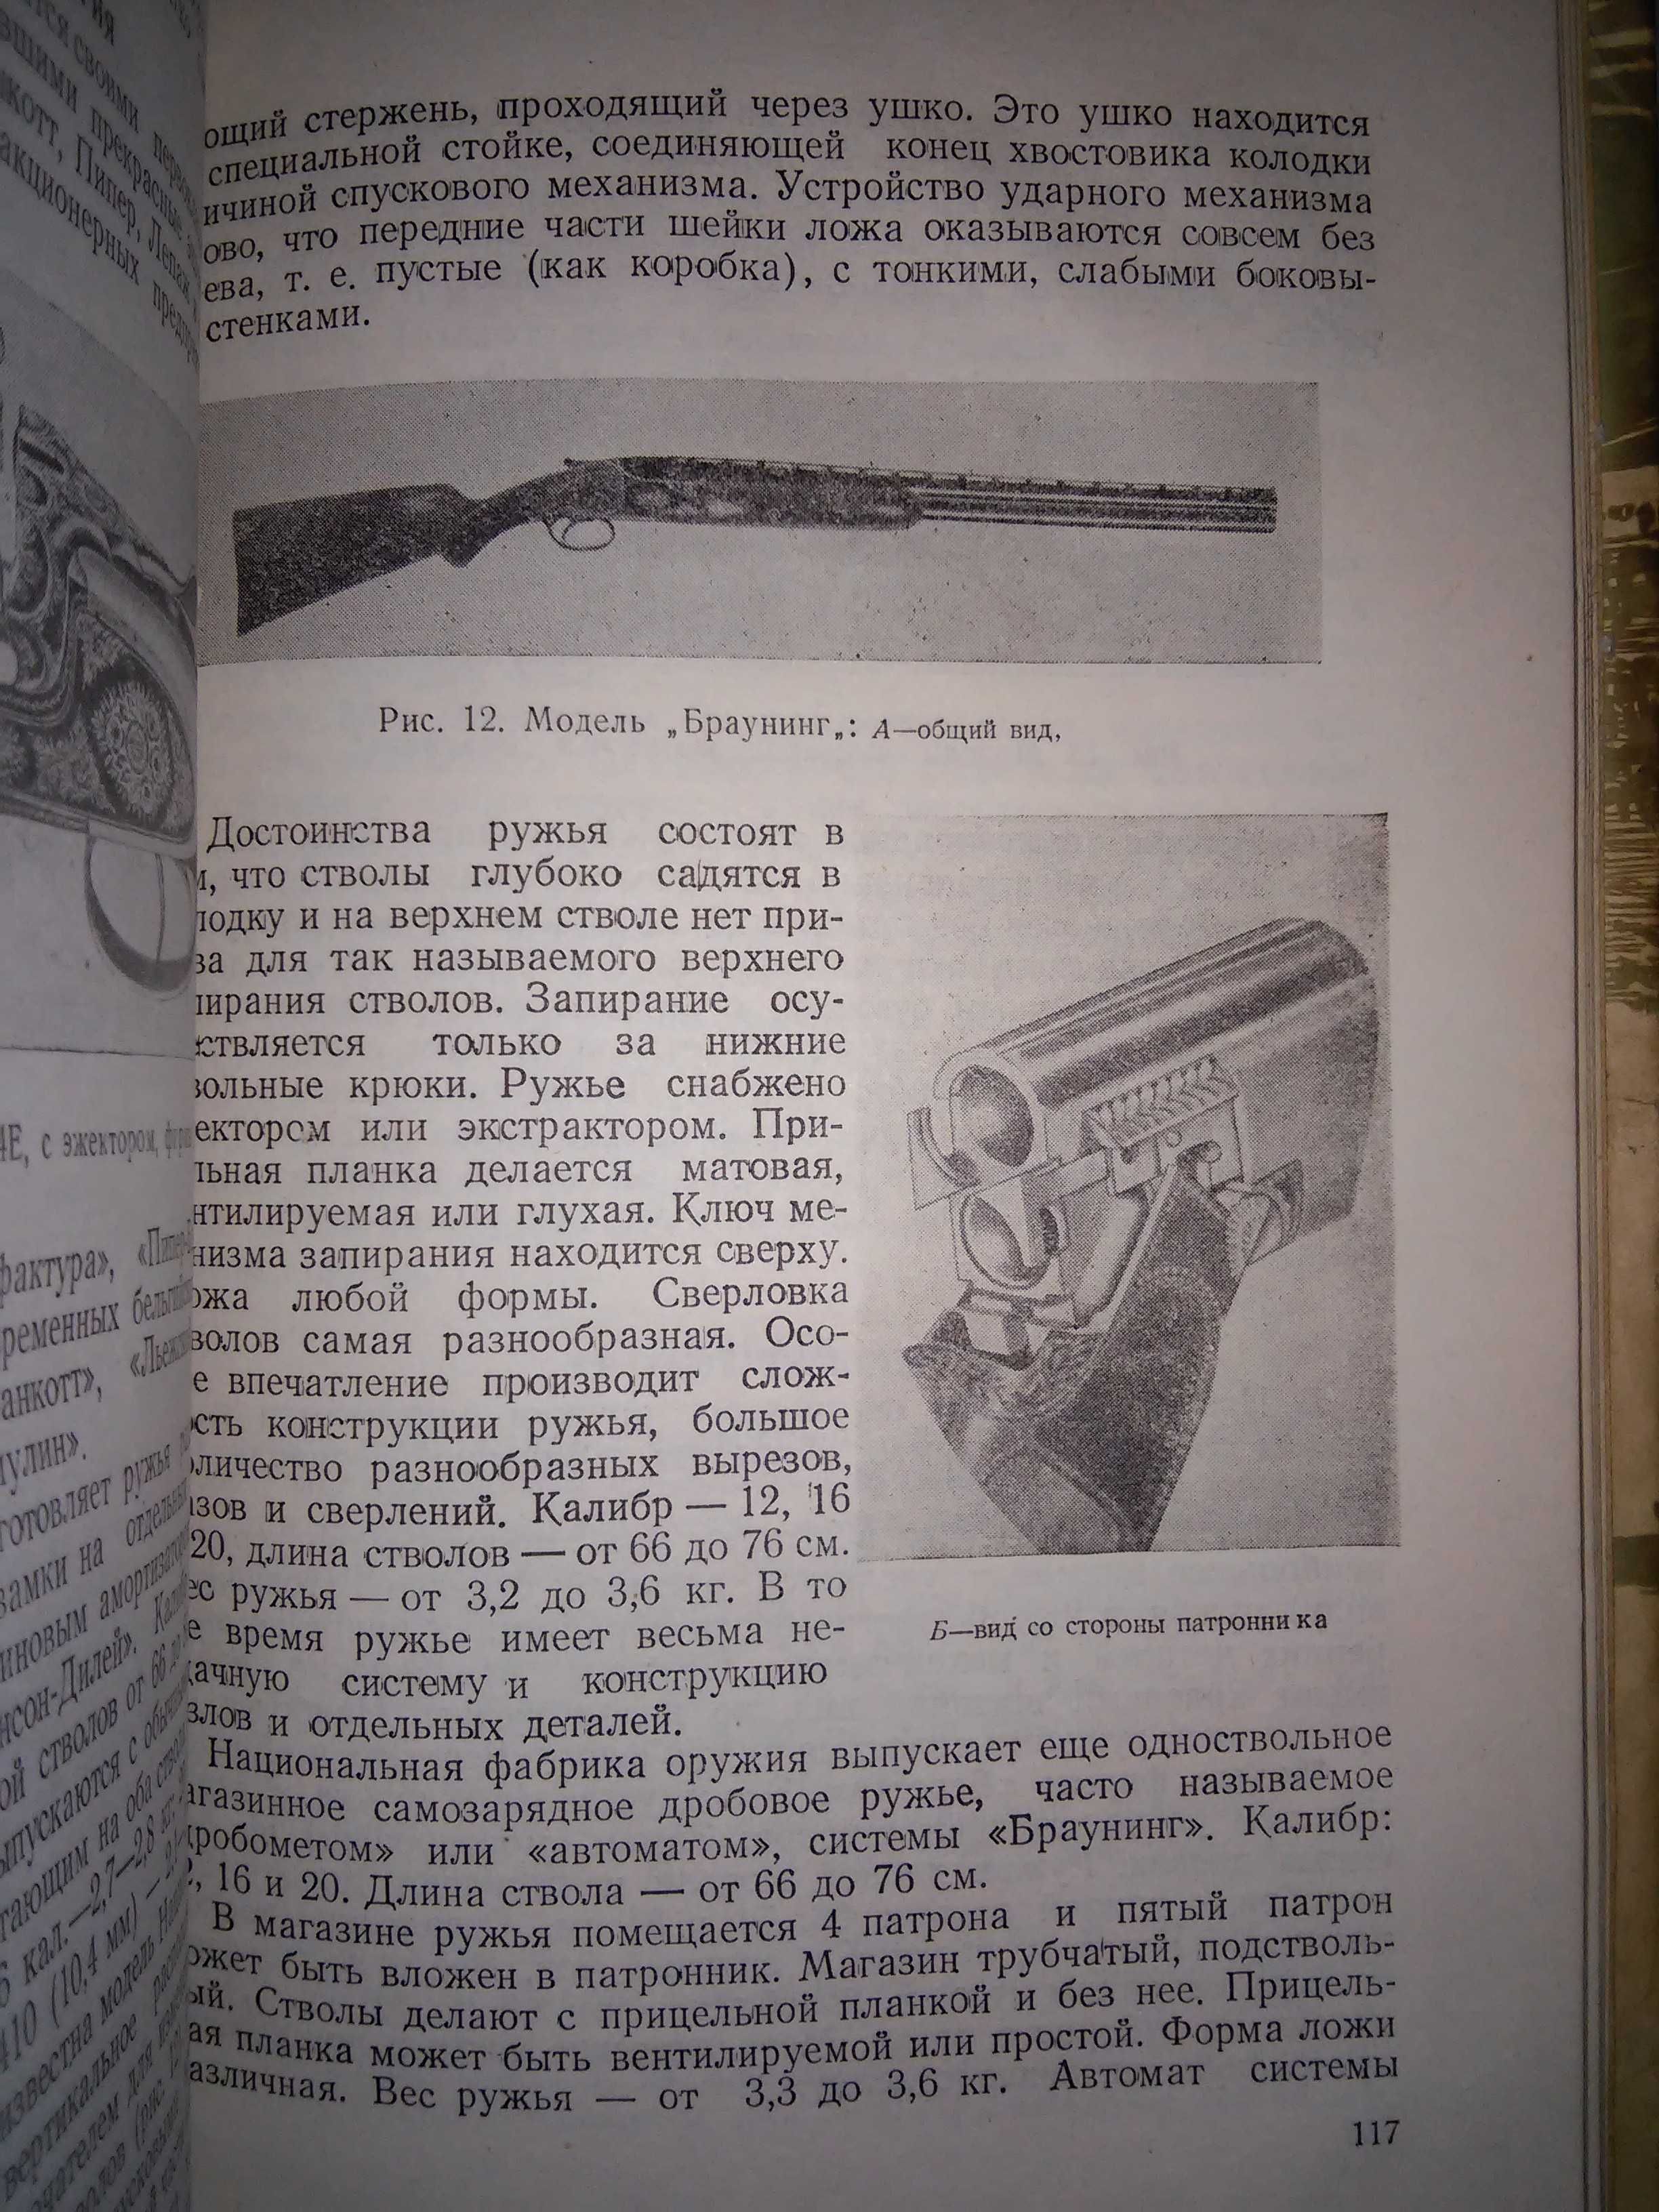 Рационализация охотничьего промысла Выпуск 7 1958 г.